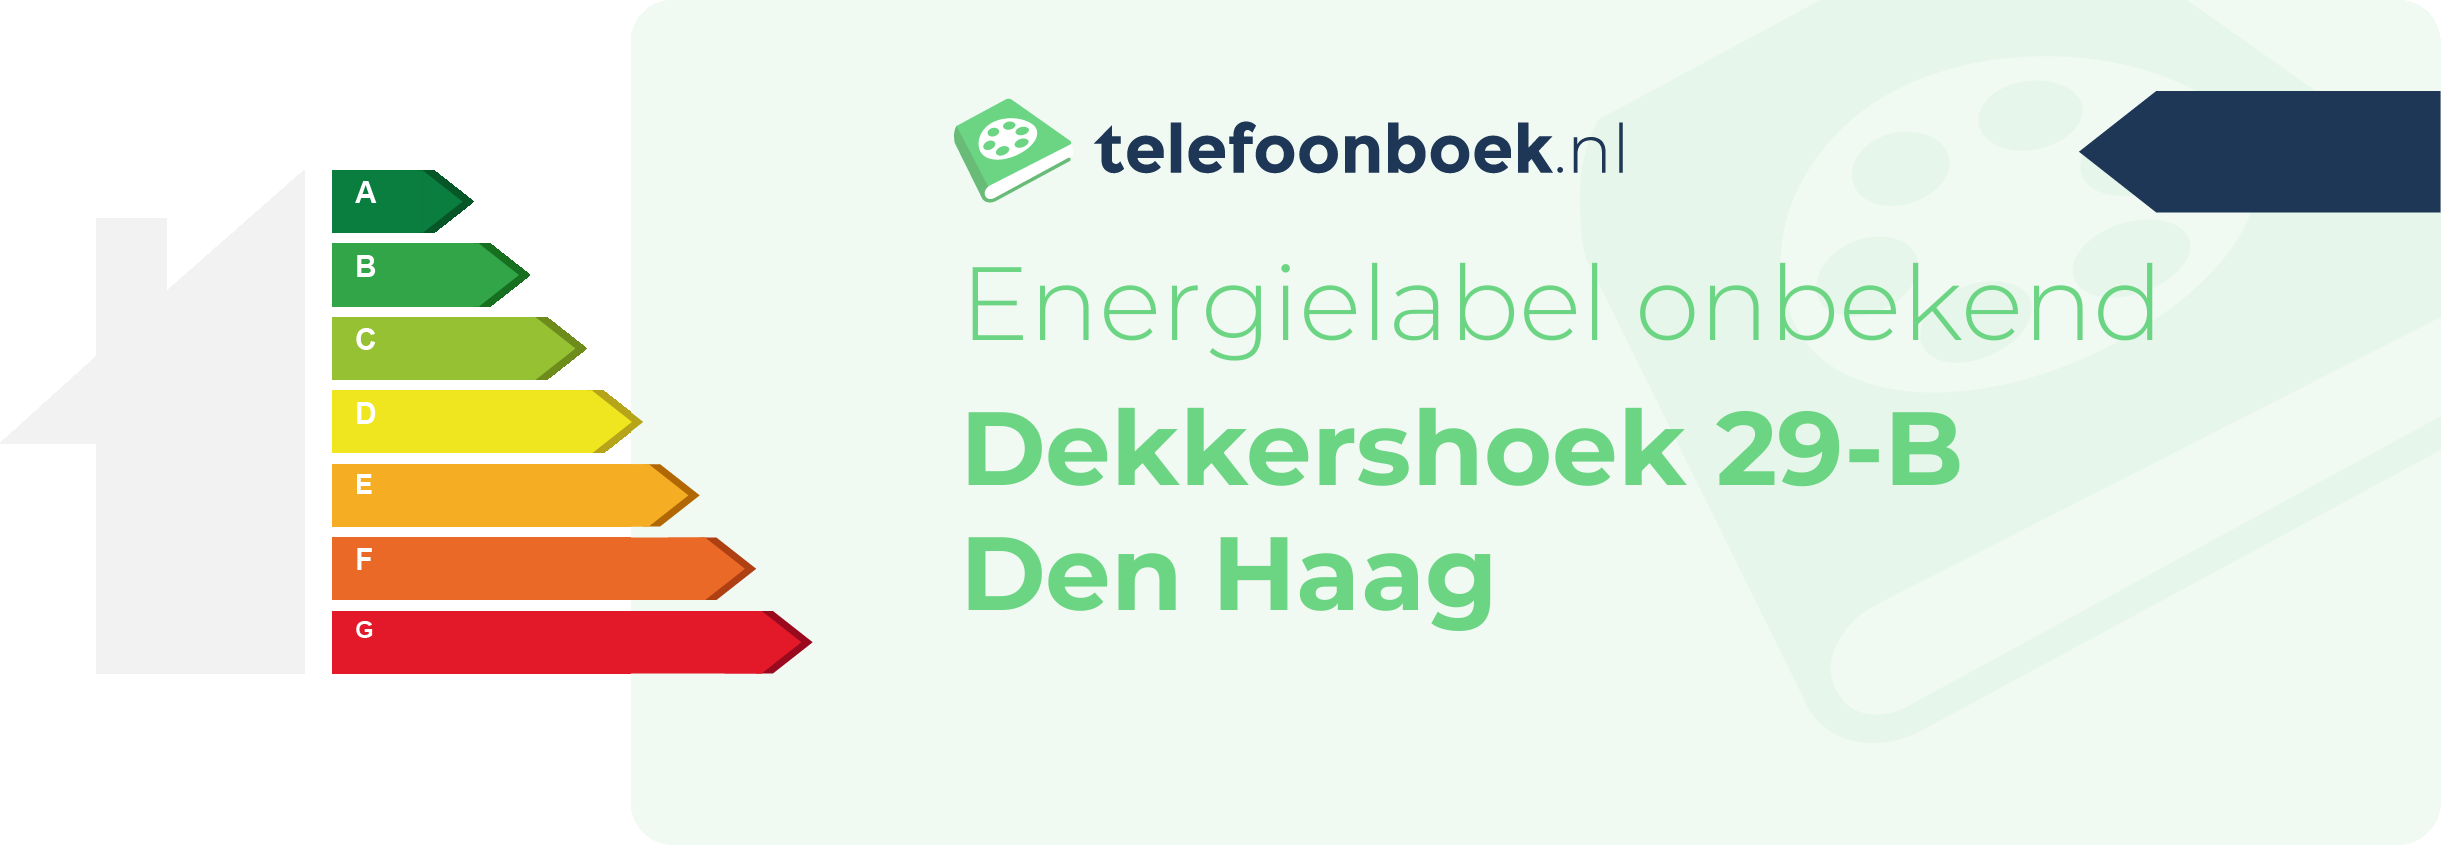 Energielabel Dekkershoek 29-B Den Haag